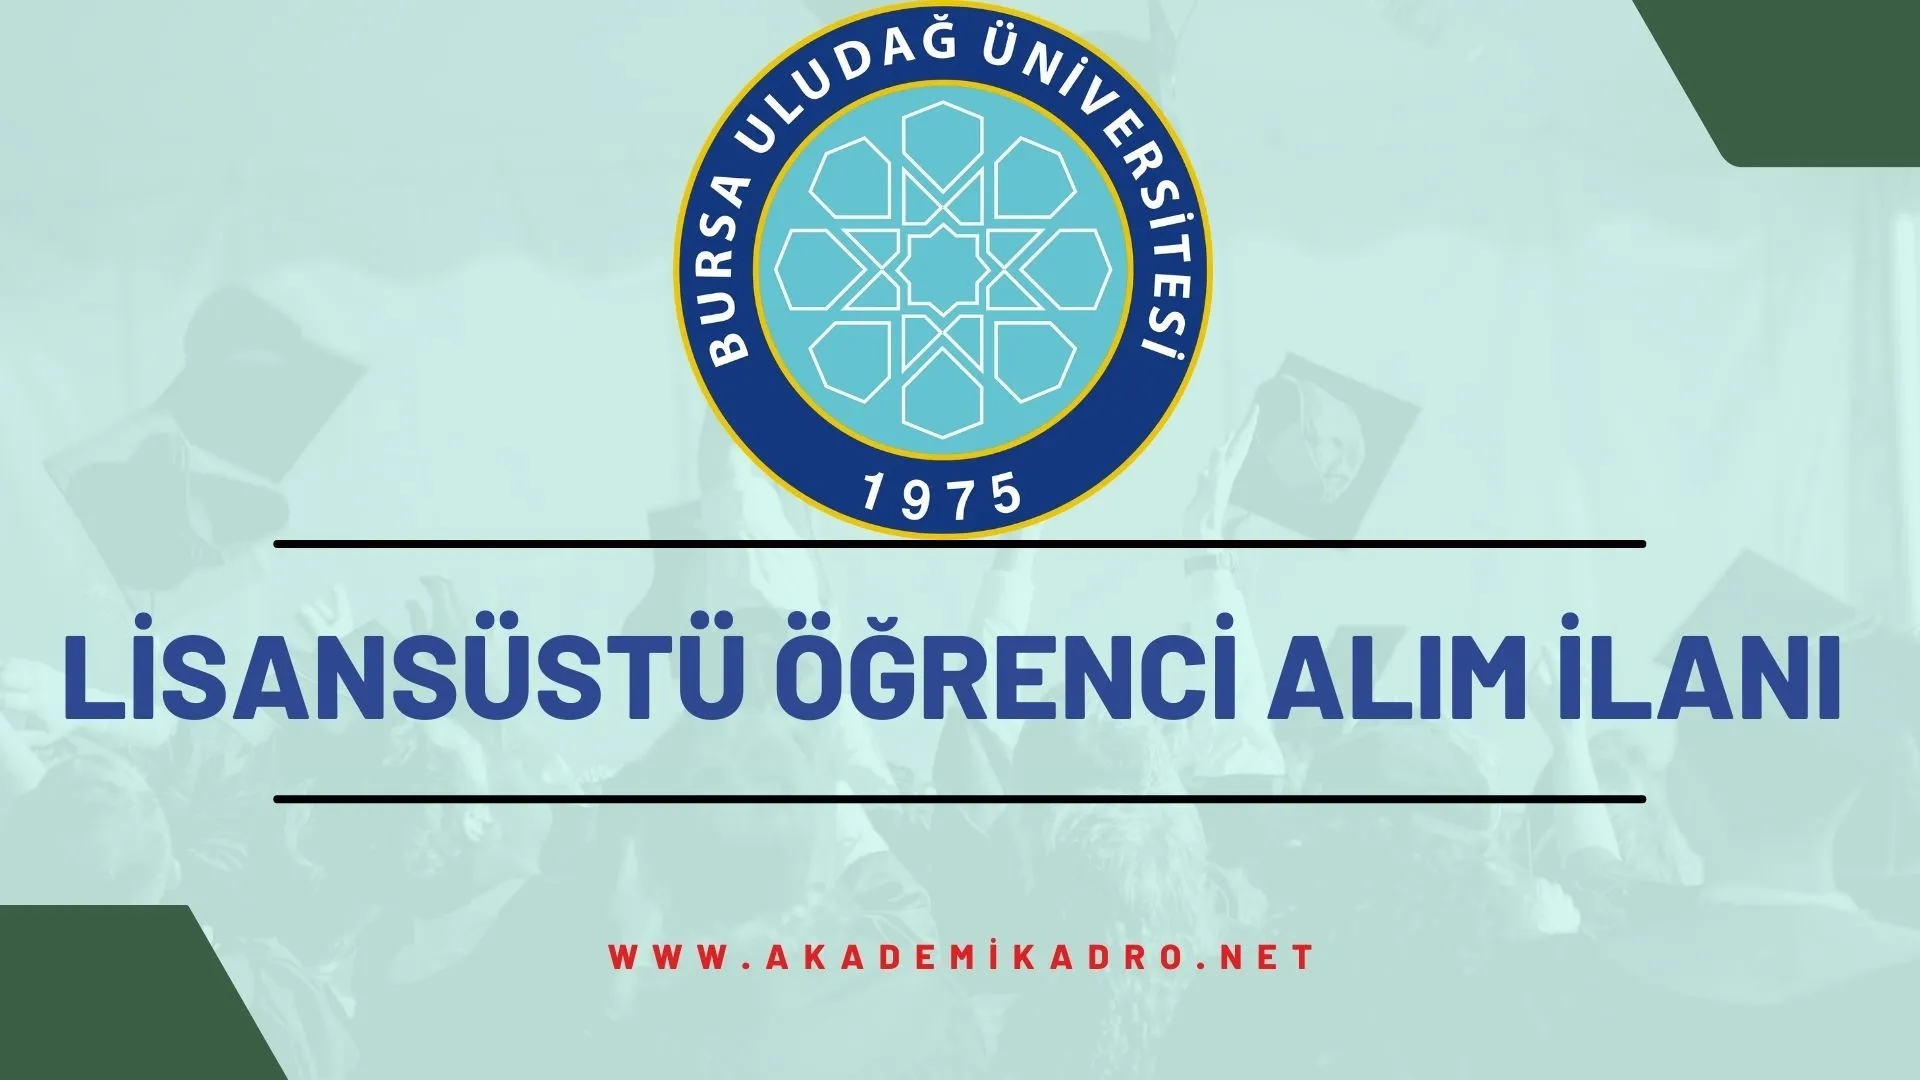 Bursa Uludağ Üniversitesi 2022-2023 bahar döneminde lisansüstü programlara öğrenci alacaktır.